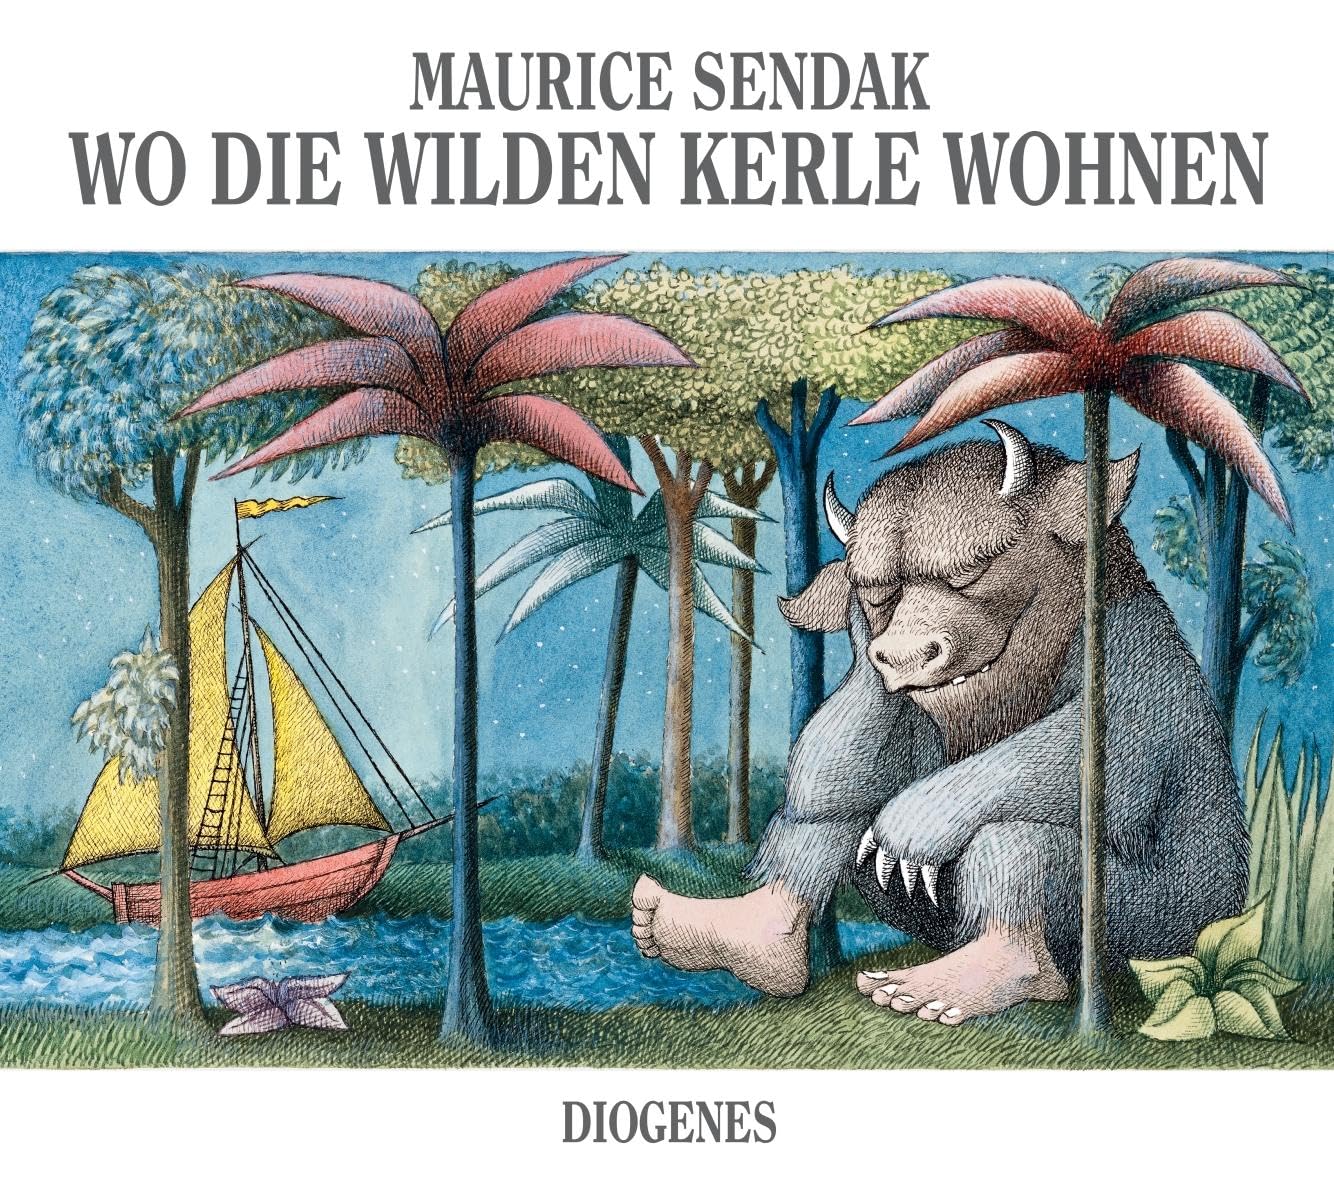 Buchcover von 'Wo die wilden Kerle wohnen' von Maurice Sendak, ein beliebtes Kinderbuch zum Vorlesen, zeigt Max in seinem Wolfskostüm neben einer Gruppe wilder Kerle